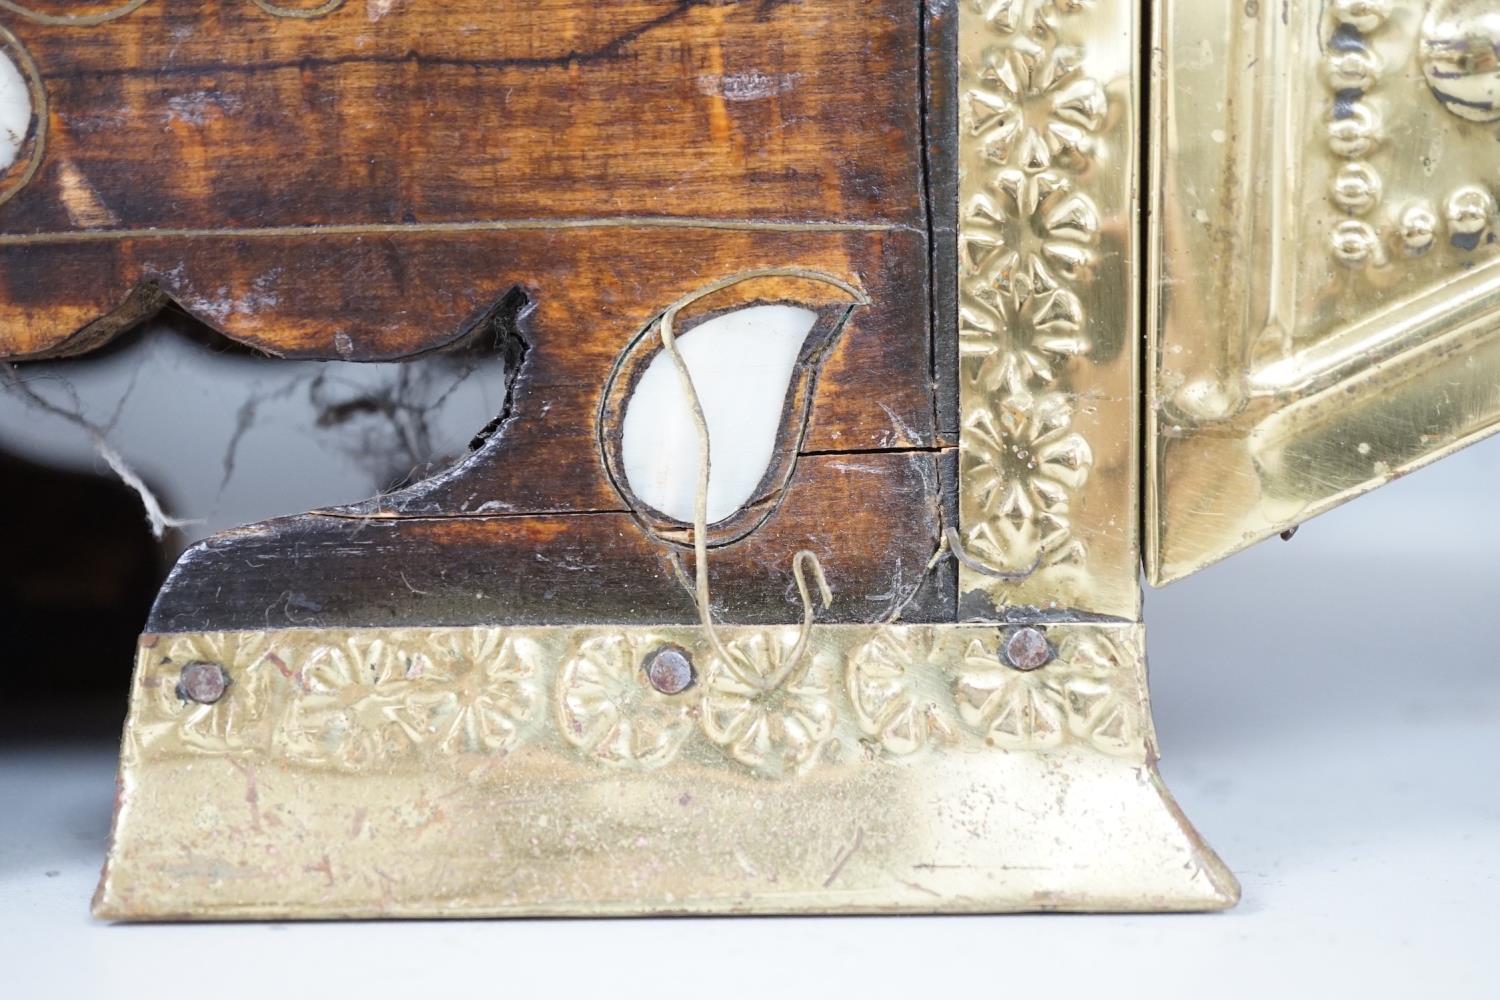 An Indian brass & hardwood shoe shiner's set, with twelve flasks. 57cm. long. 15cm. deep. 28cm. - Image 5 of 5